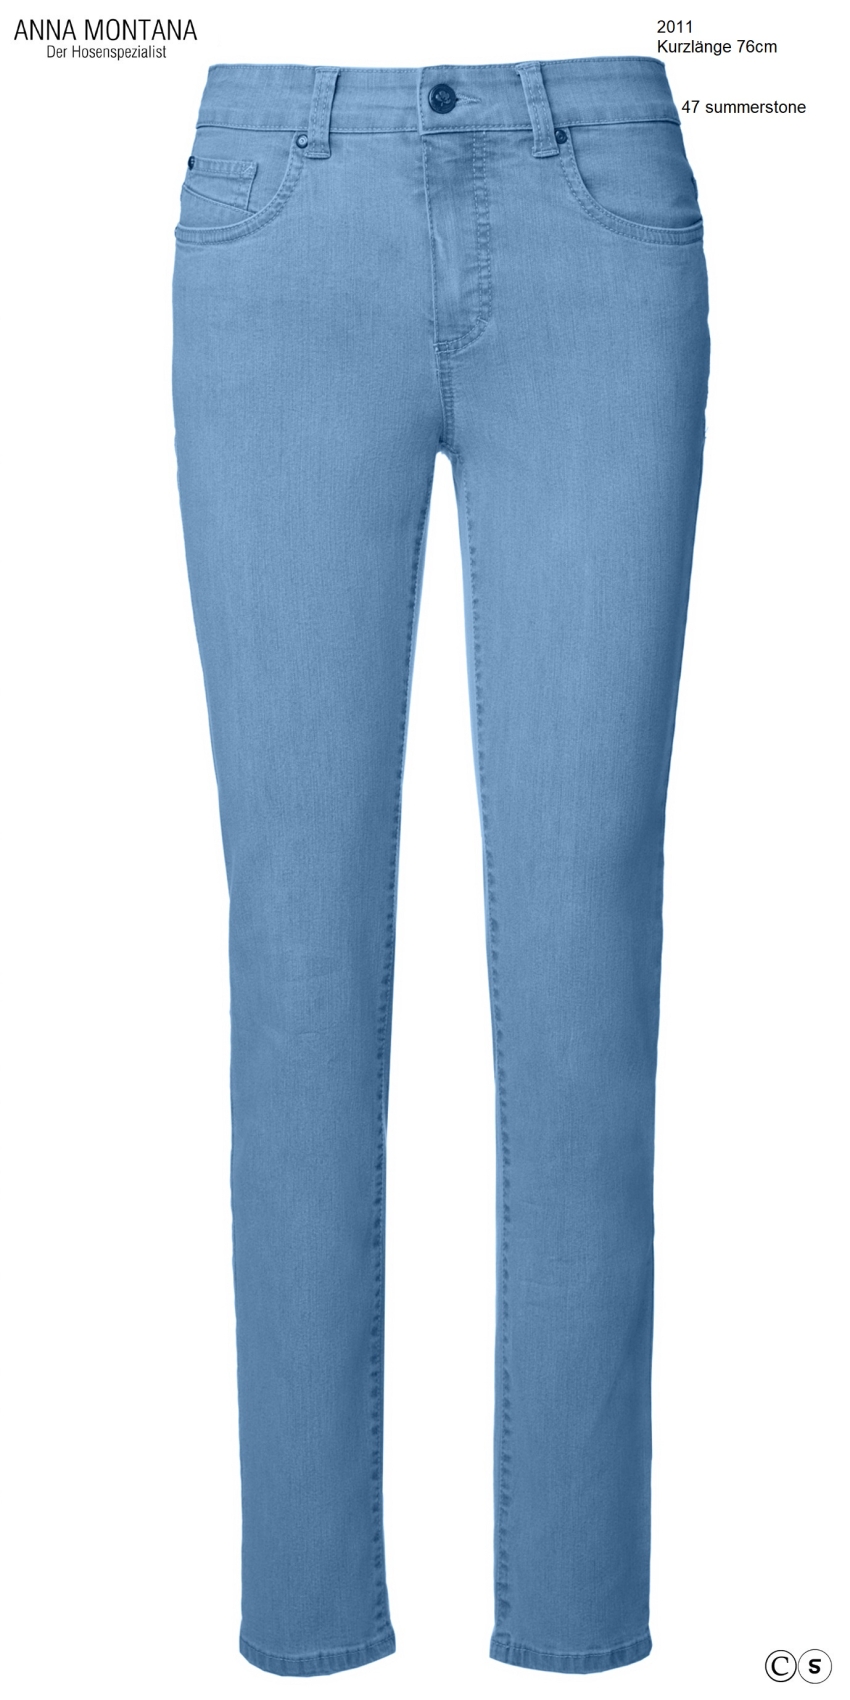 Julia 2011, reduzierte Einzelteile / ER / Basic kurze Länge / Hosen /Jeans in Größe 36 bis 48 / Stretch / ANNA MONTANA